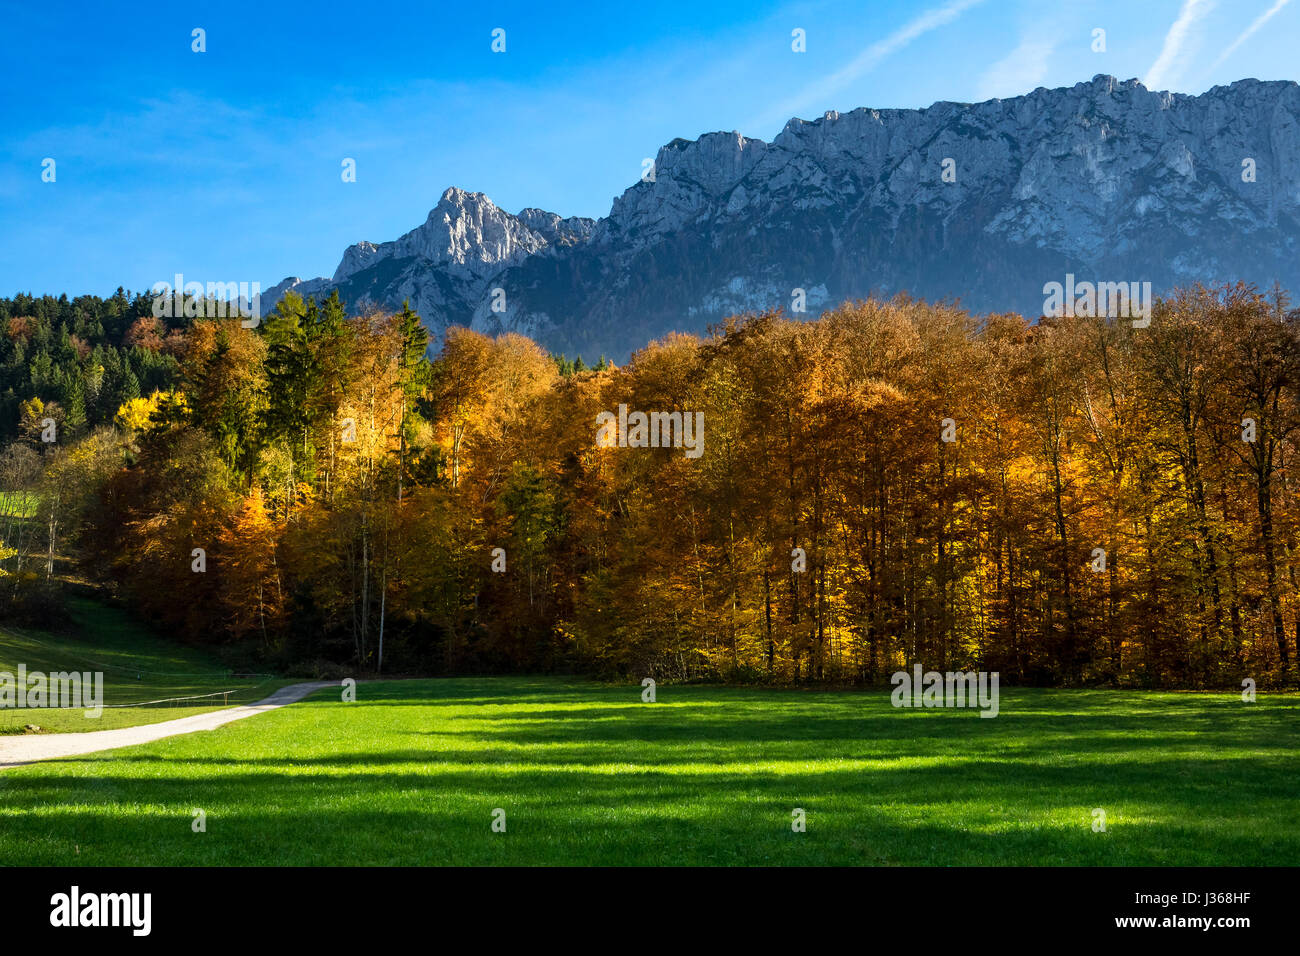 Autumn mountain landscape with mountain range in the background. Austria, Tirol, Tyrol Stock Photo